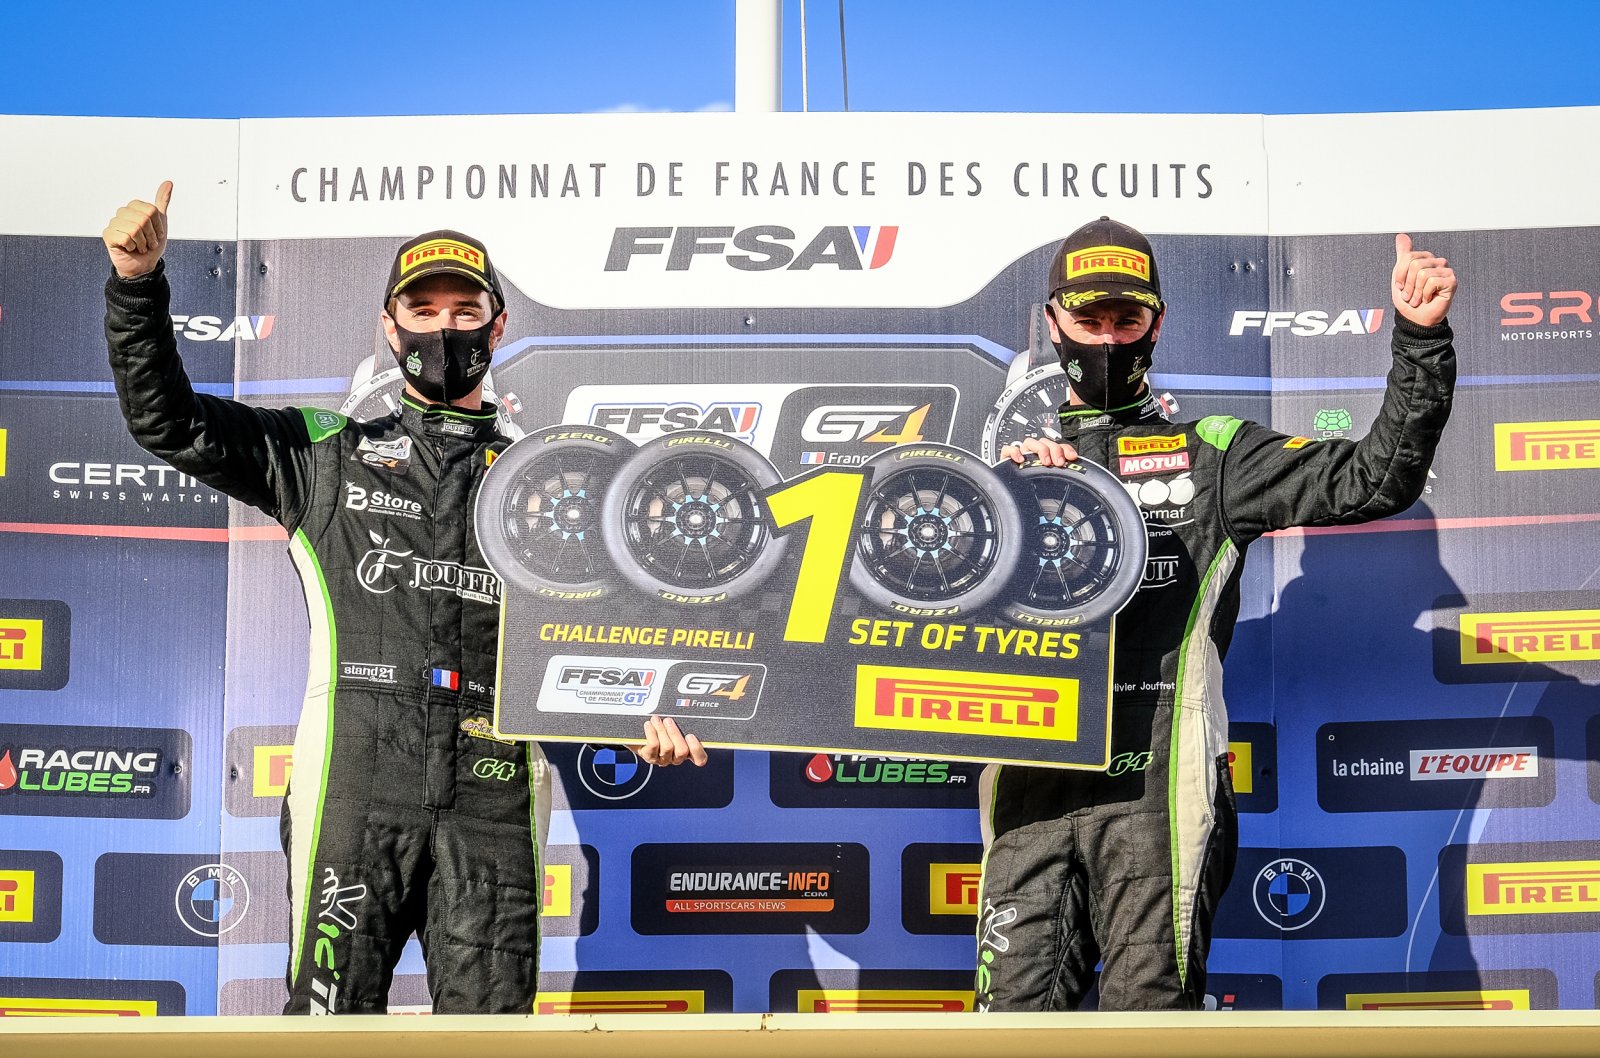 Le Challenge Pirelli récompense l’abnégation de Jouffret et Trémoulet